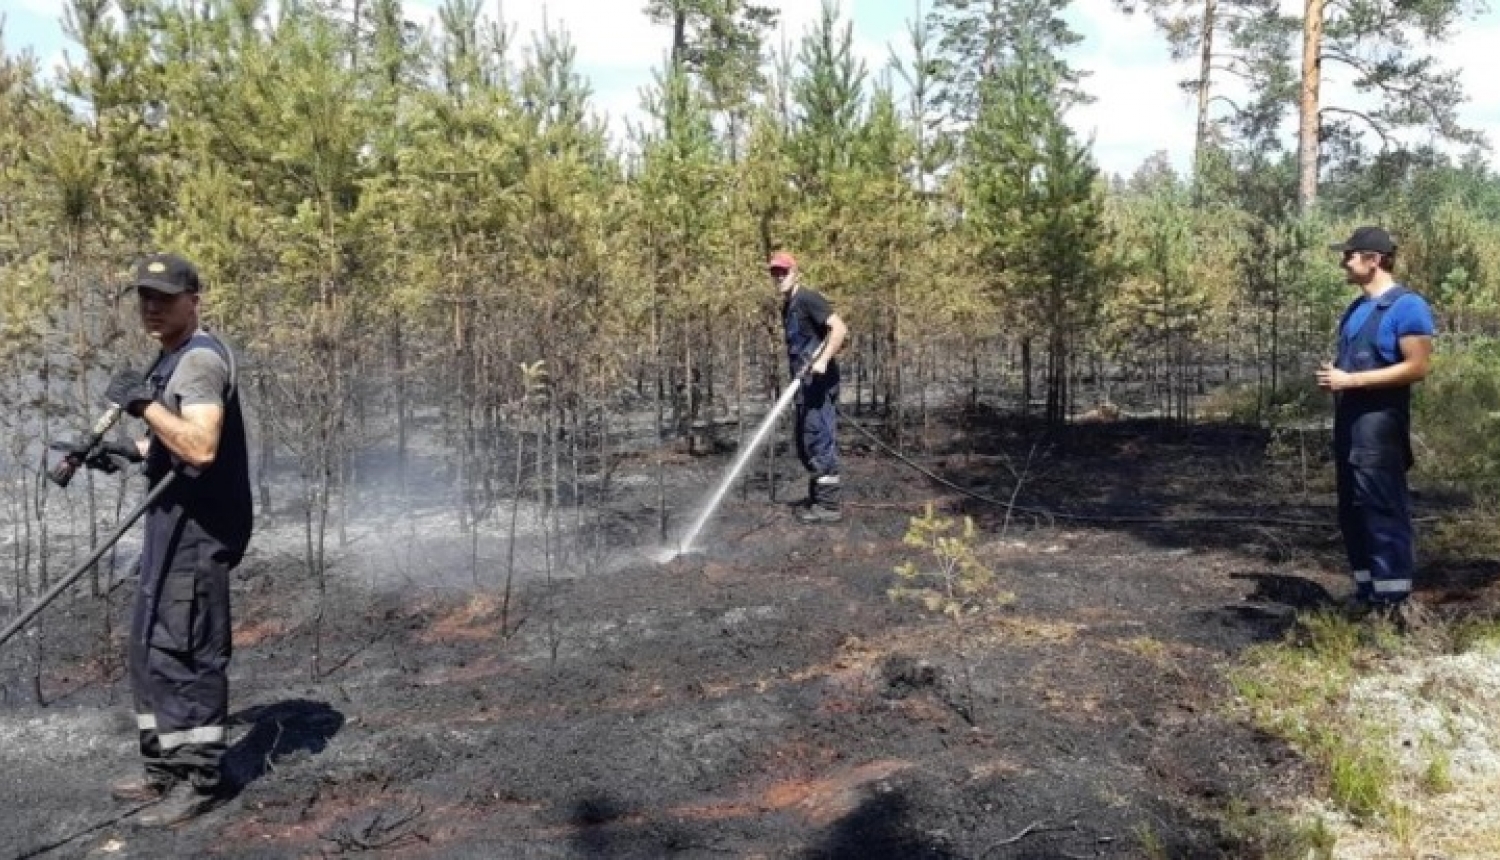 Rīgas Mežos šovasar dzēsti 47 ugunsgrēki; postošākais no tiem – Garkalnes ugunsgrēks